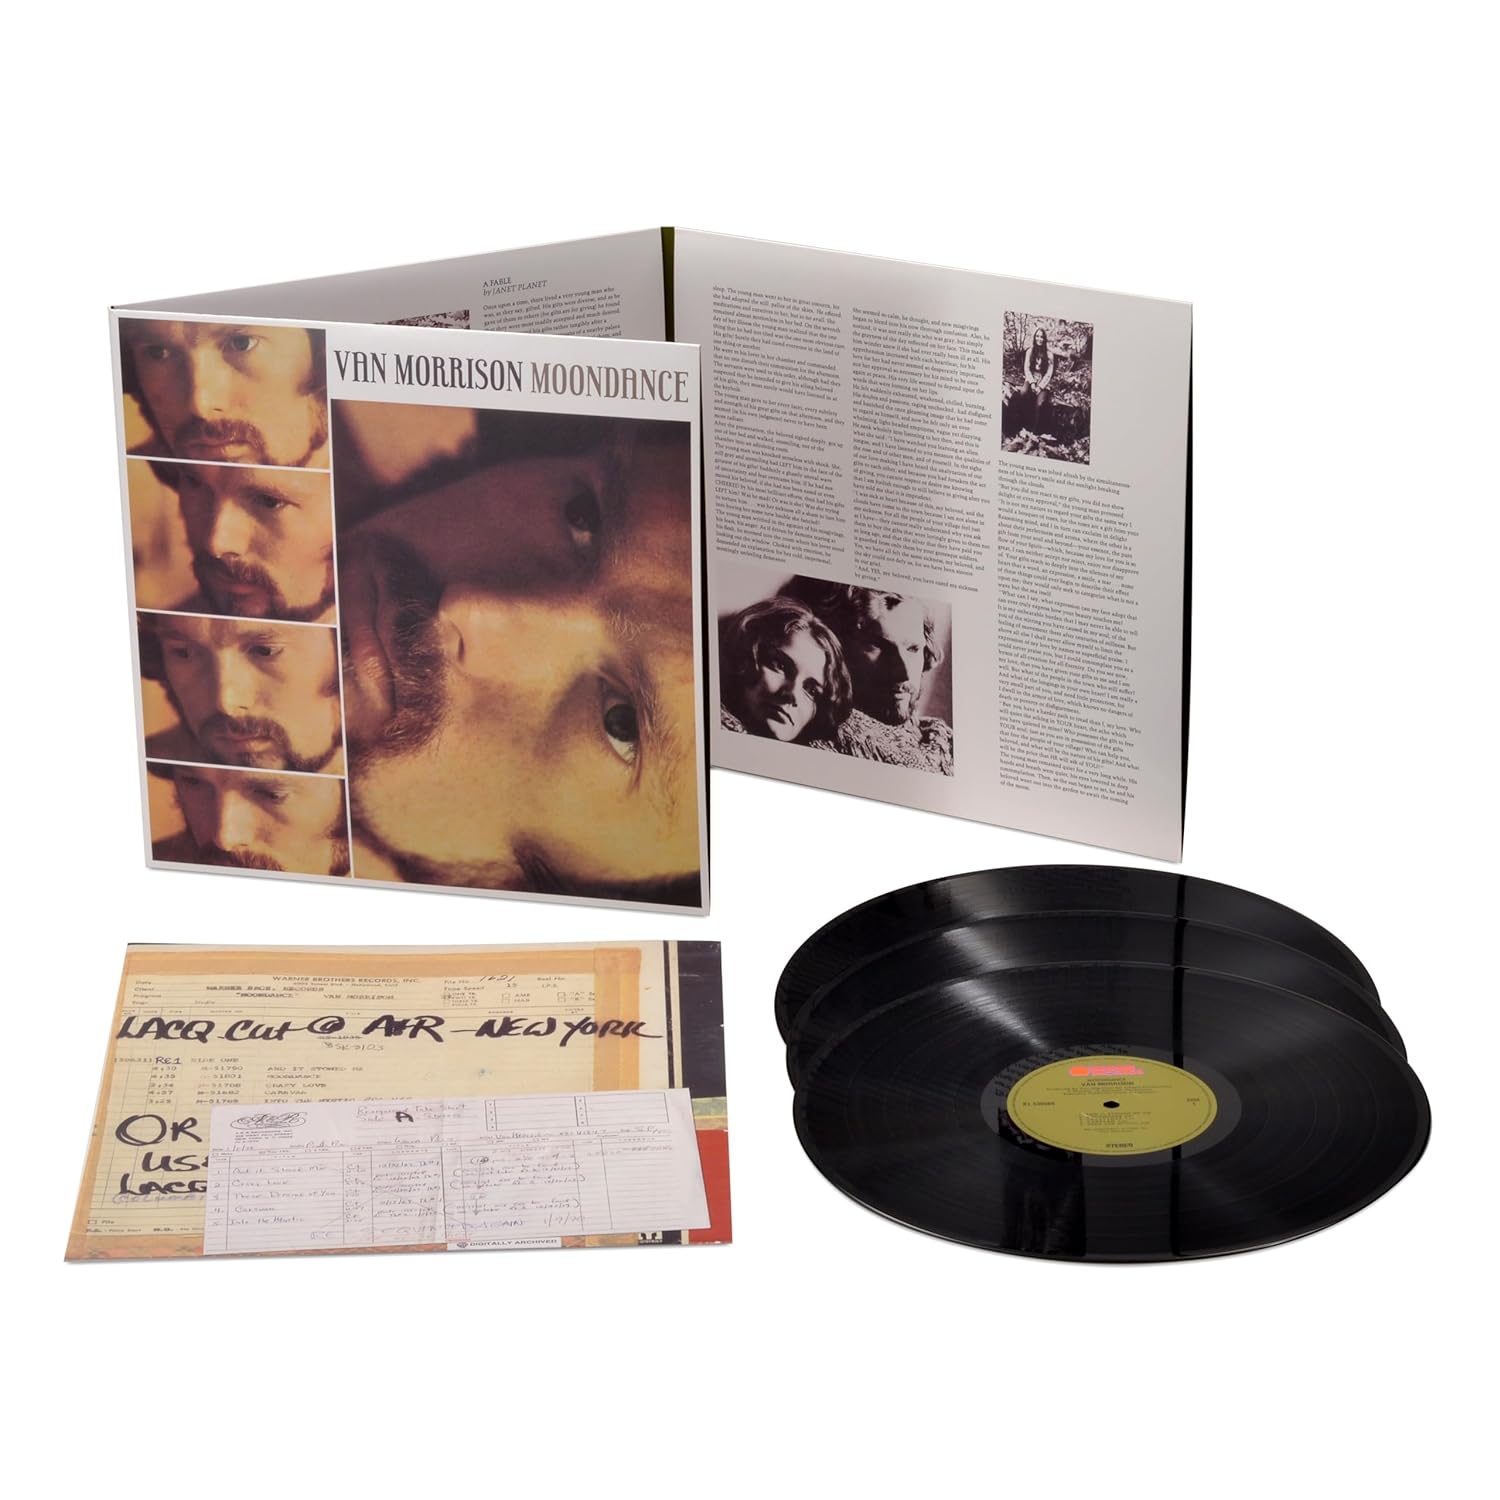 Van Morrison - Moondance [3-lp Deluxe Edition]